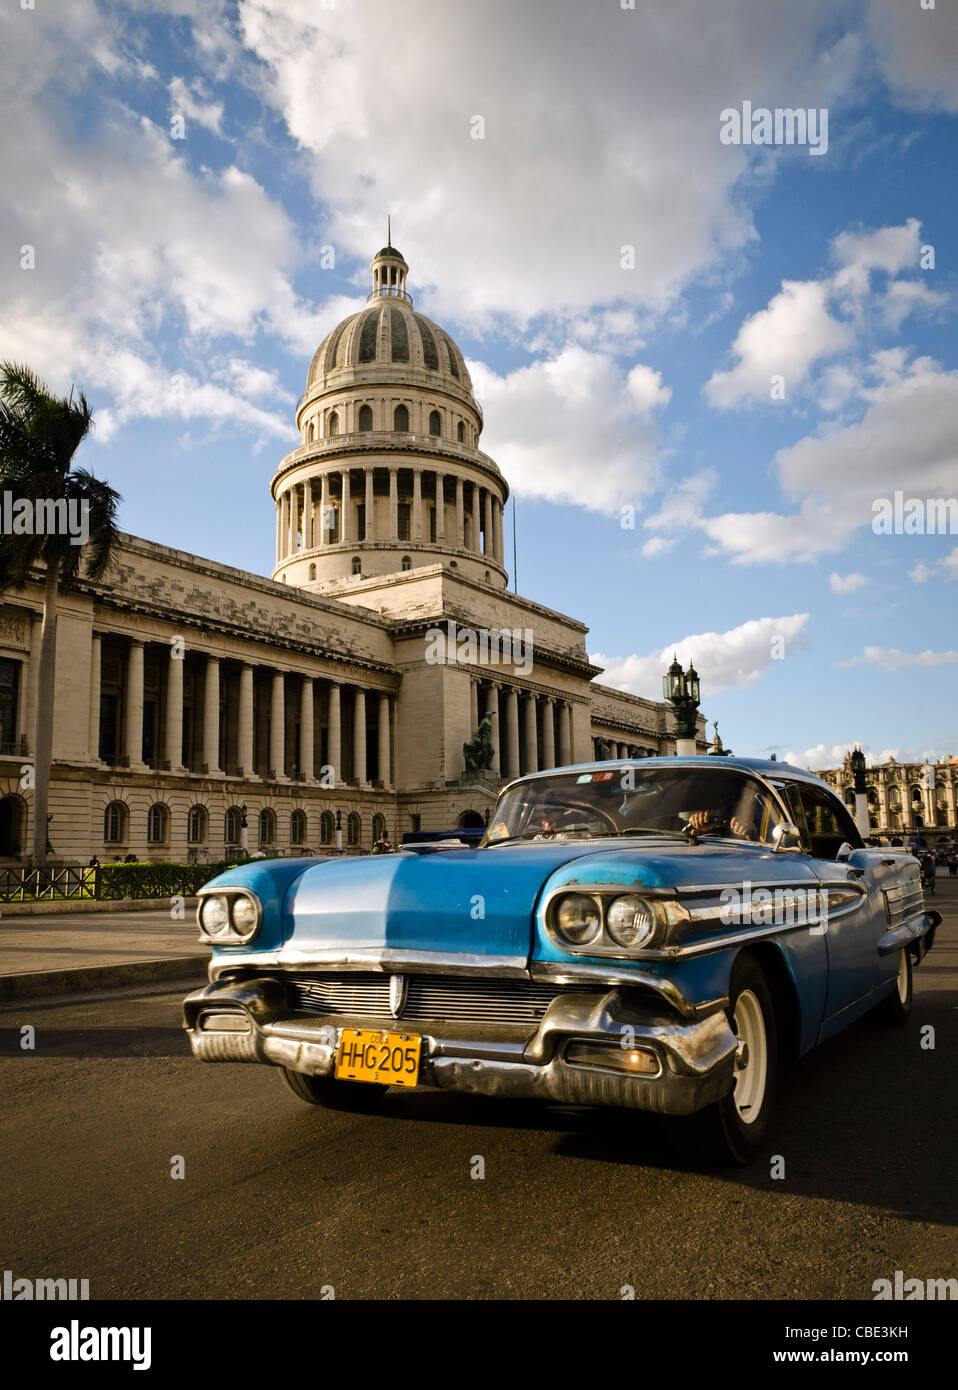 Coche clásico americano en frente de el Capitolio La Habana Cuba Foto de stock